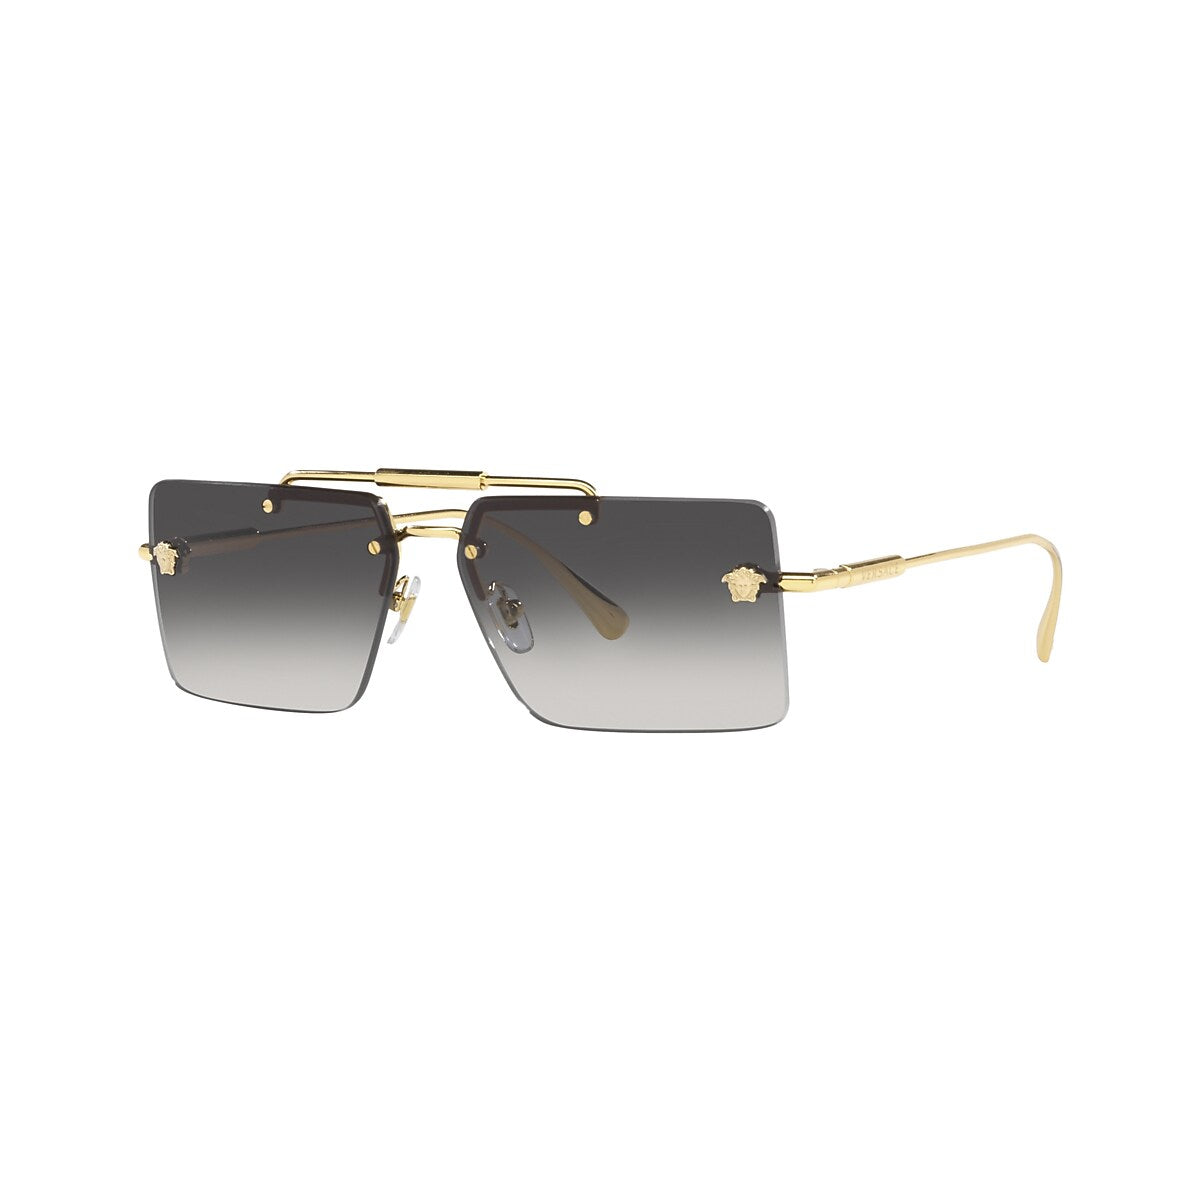 VERSACE VE2245 Gold - Women Luxury Sunglasses, Grey Gradient Lens